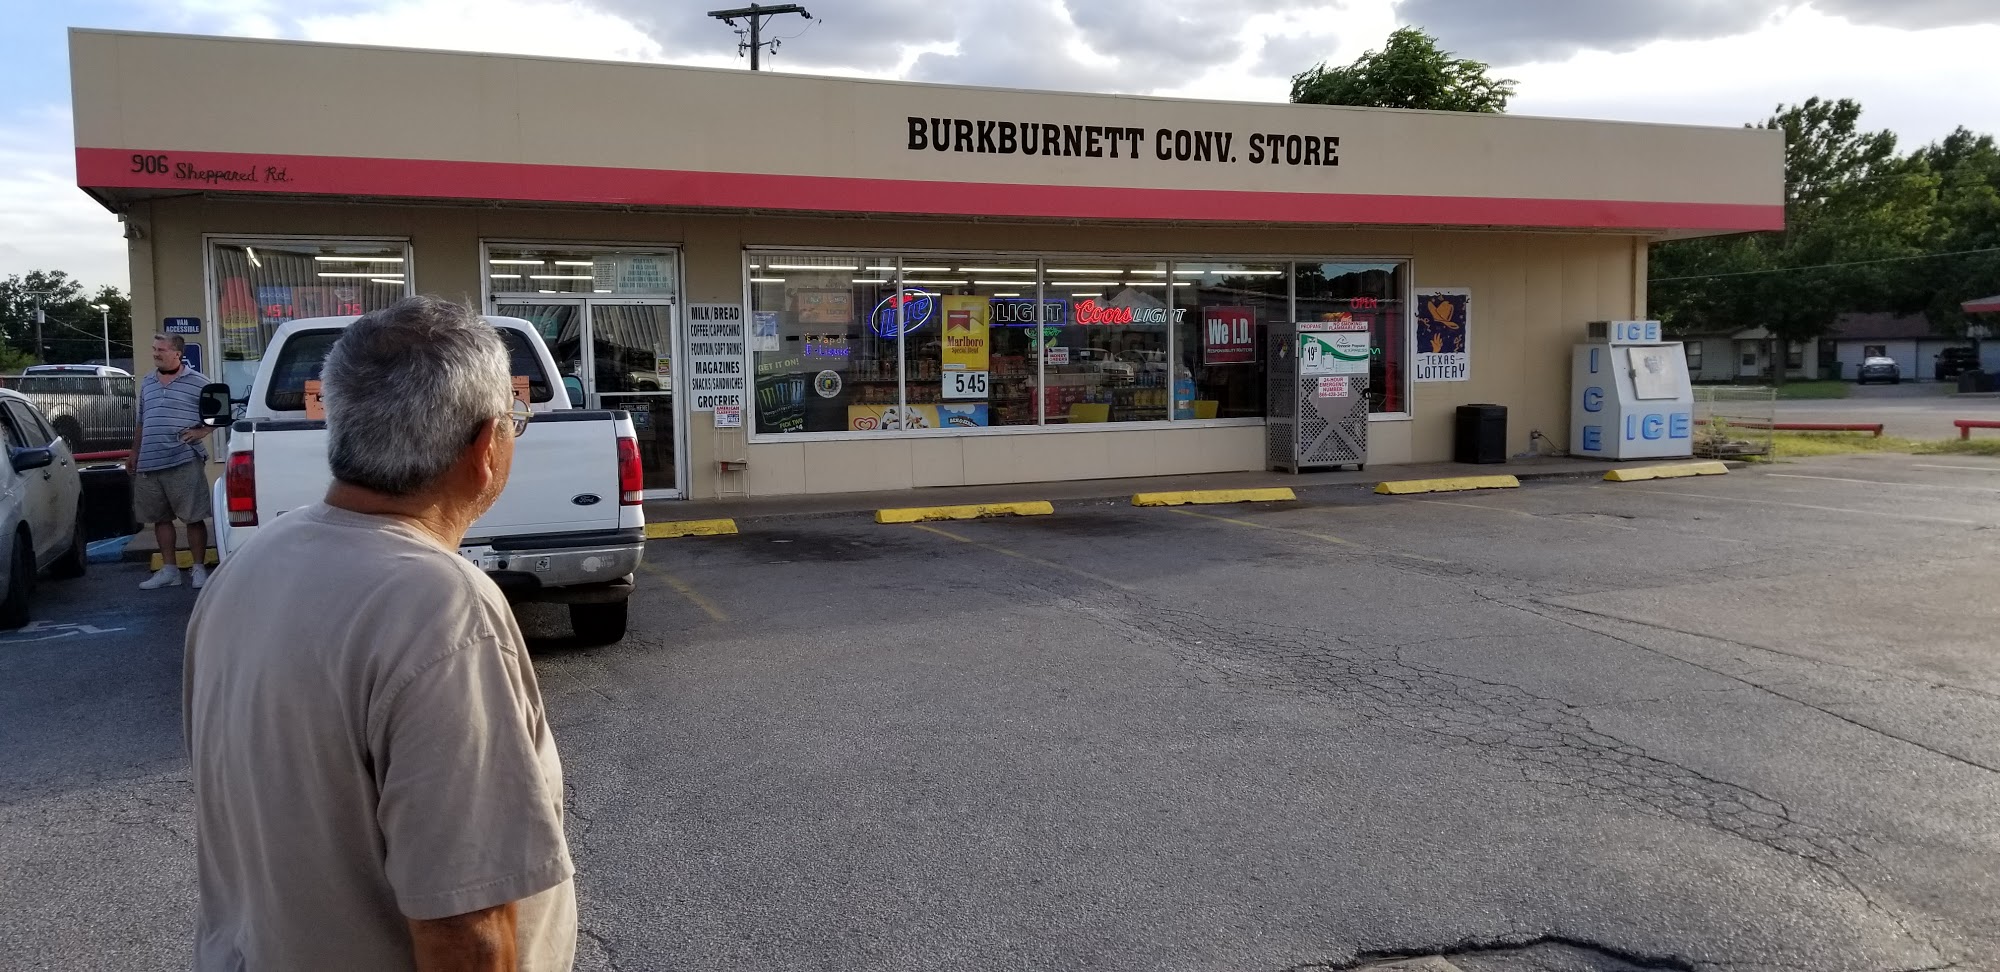 Burkburnett Convenience Store